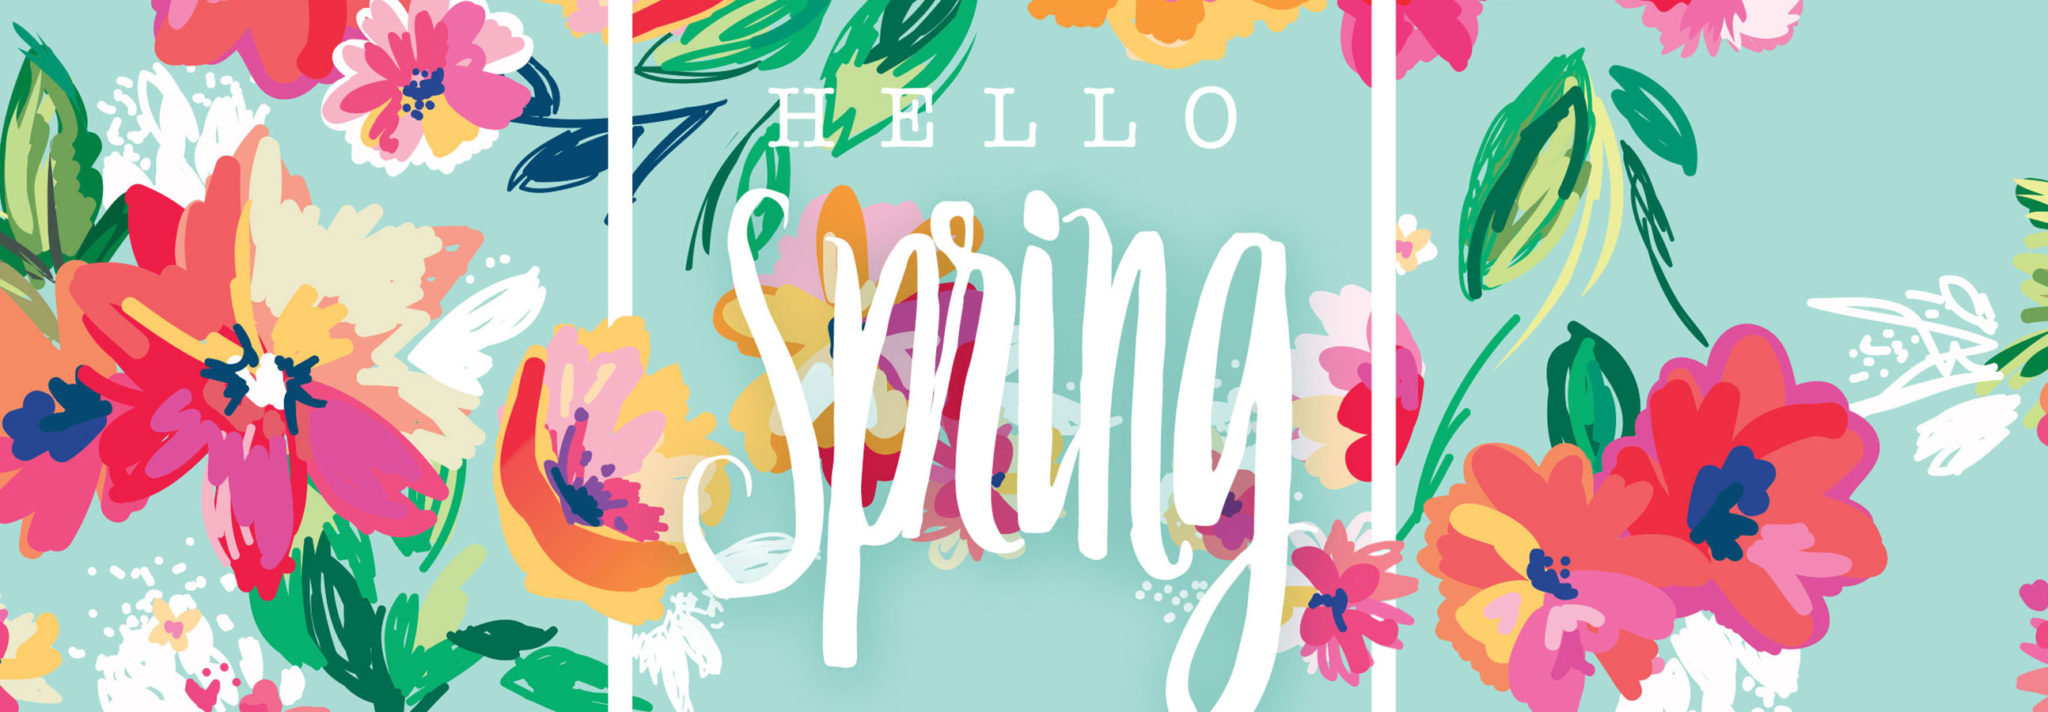 Spring Wallpaper  |  FREE Download!